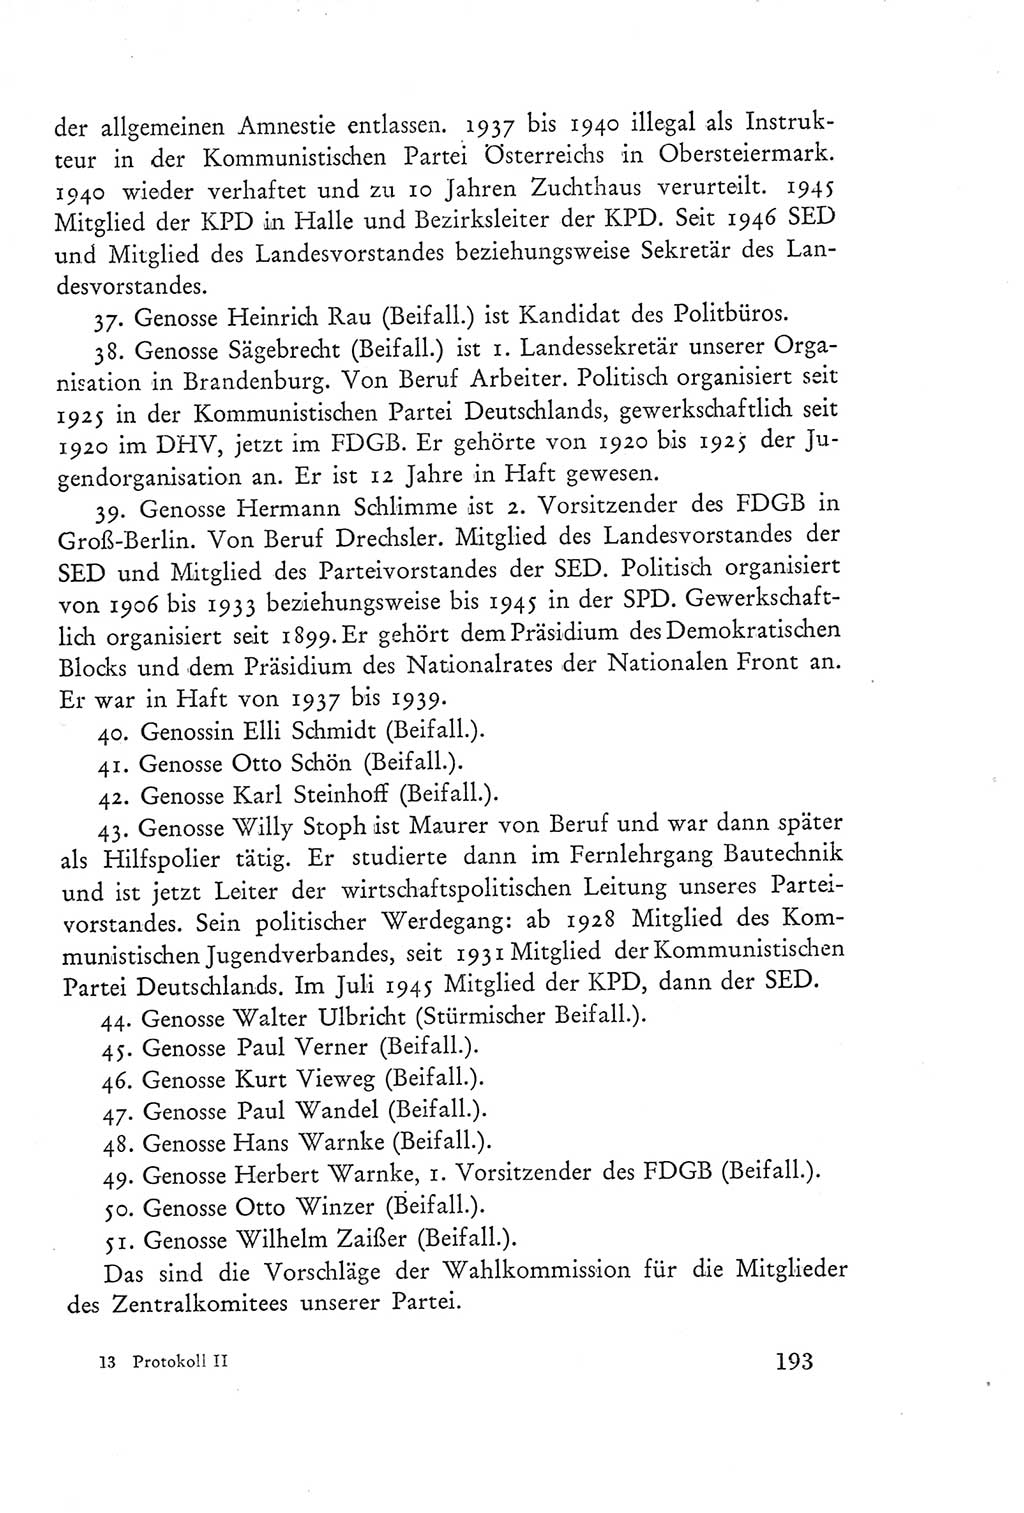 Protokoll der Verhandlungen des Ⅲ. Parteitages der Sozialistischen Einheitspartei Deutschlands (SED) [Deutsche Demokratische Republik (DDR)] 1950, Band 2, Seite 193 (Prot. Verh. Ⅲ. PT SED DDR 1950, Bd. 2, S. 193)